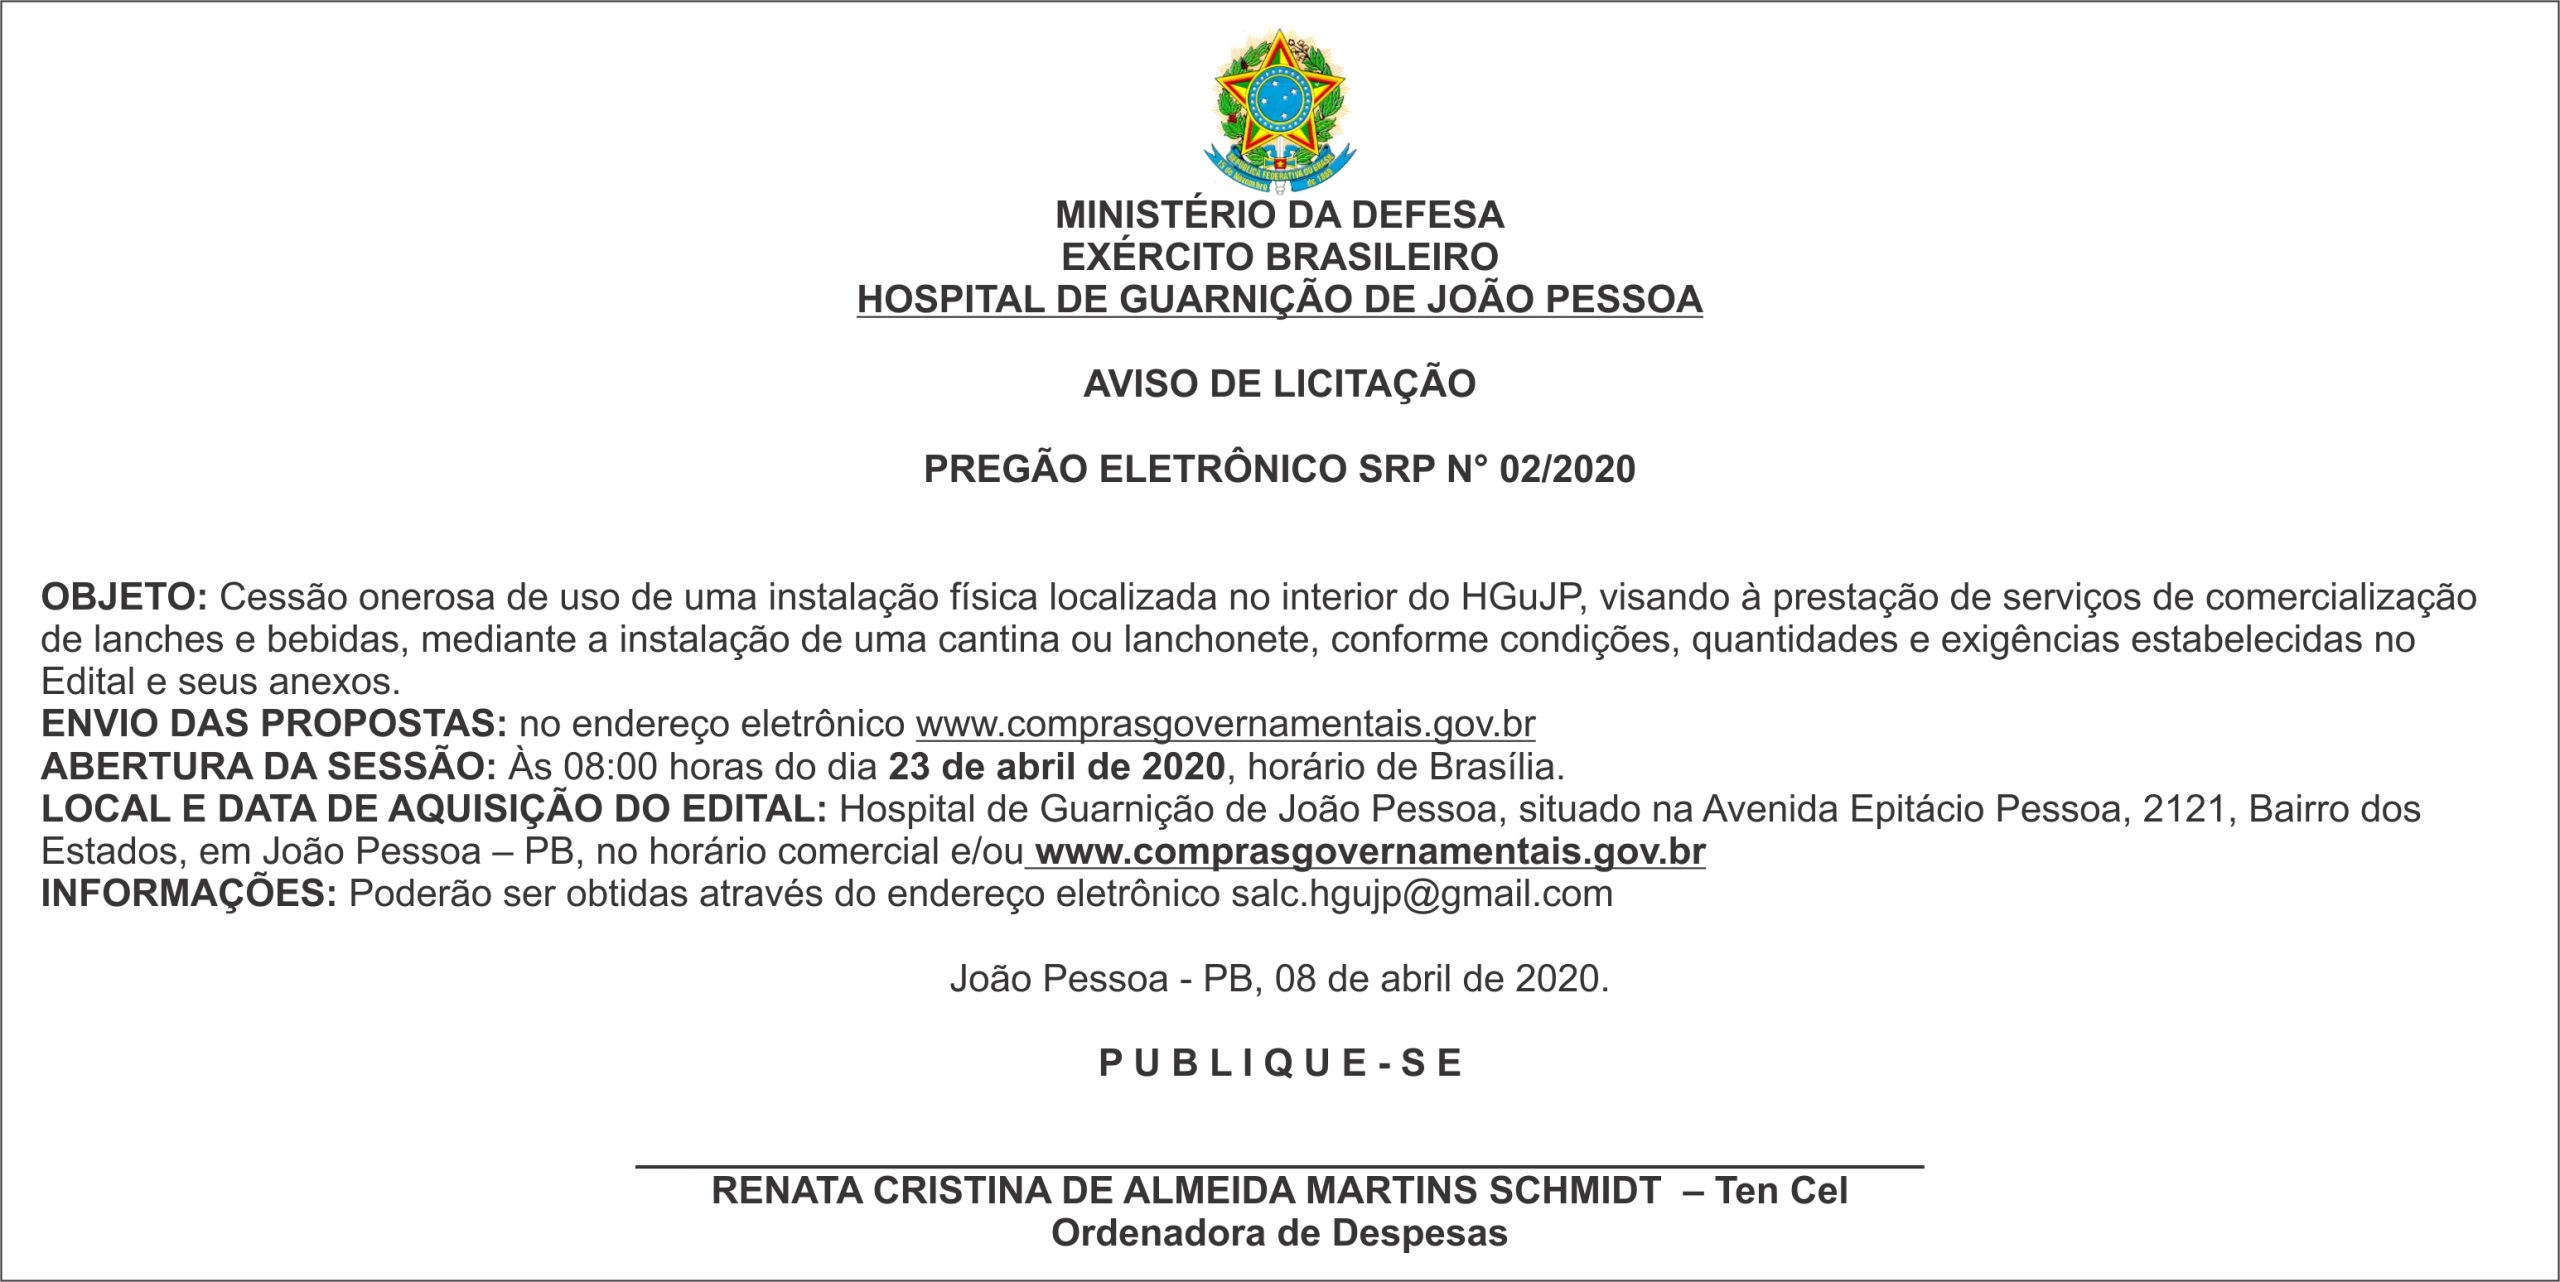 HOSPITAL DE GUARNIÇÃO DE JOÃO PESSOA – AVISO DE LICITAÇÃO PREGÃO ELETRÔNICO SRP N° 02/2020